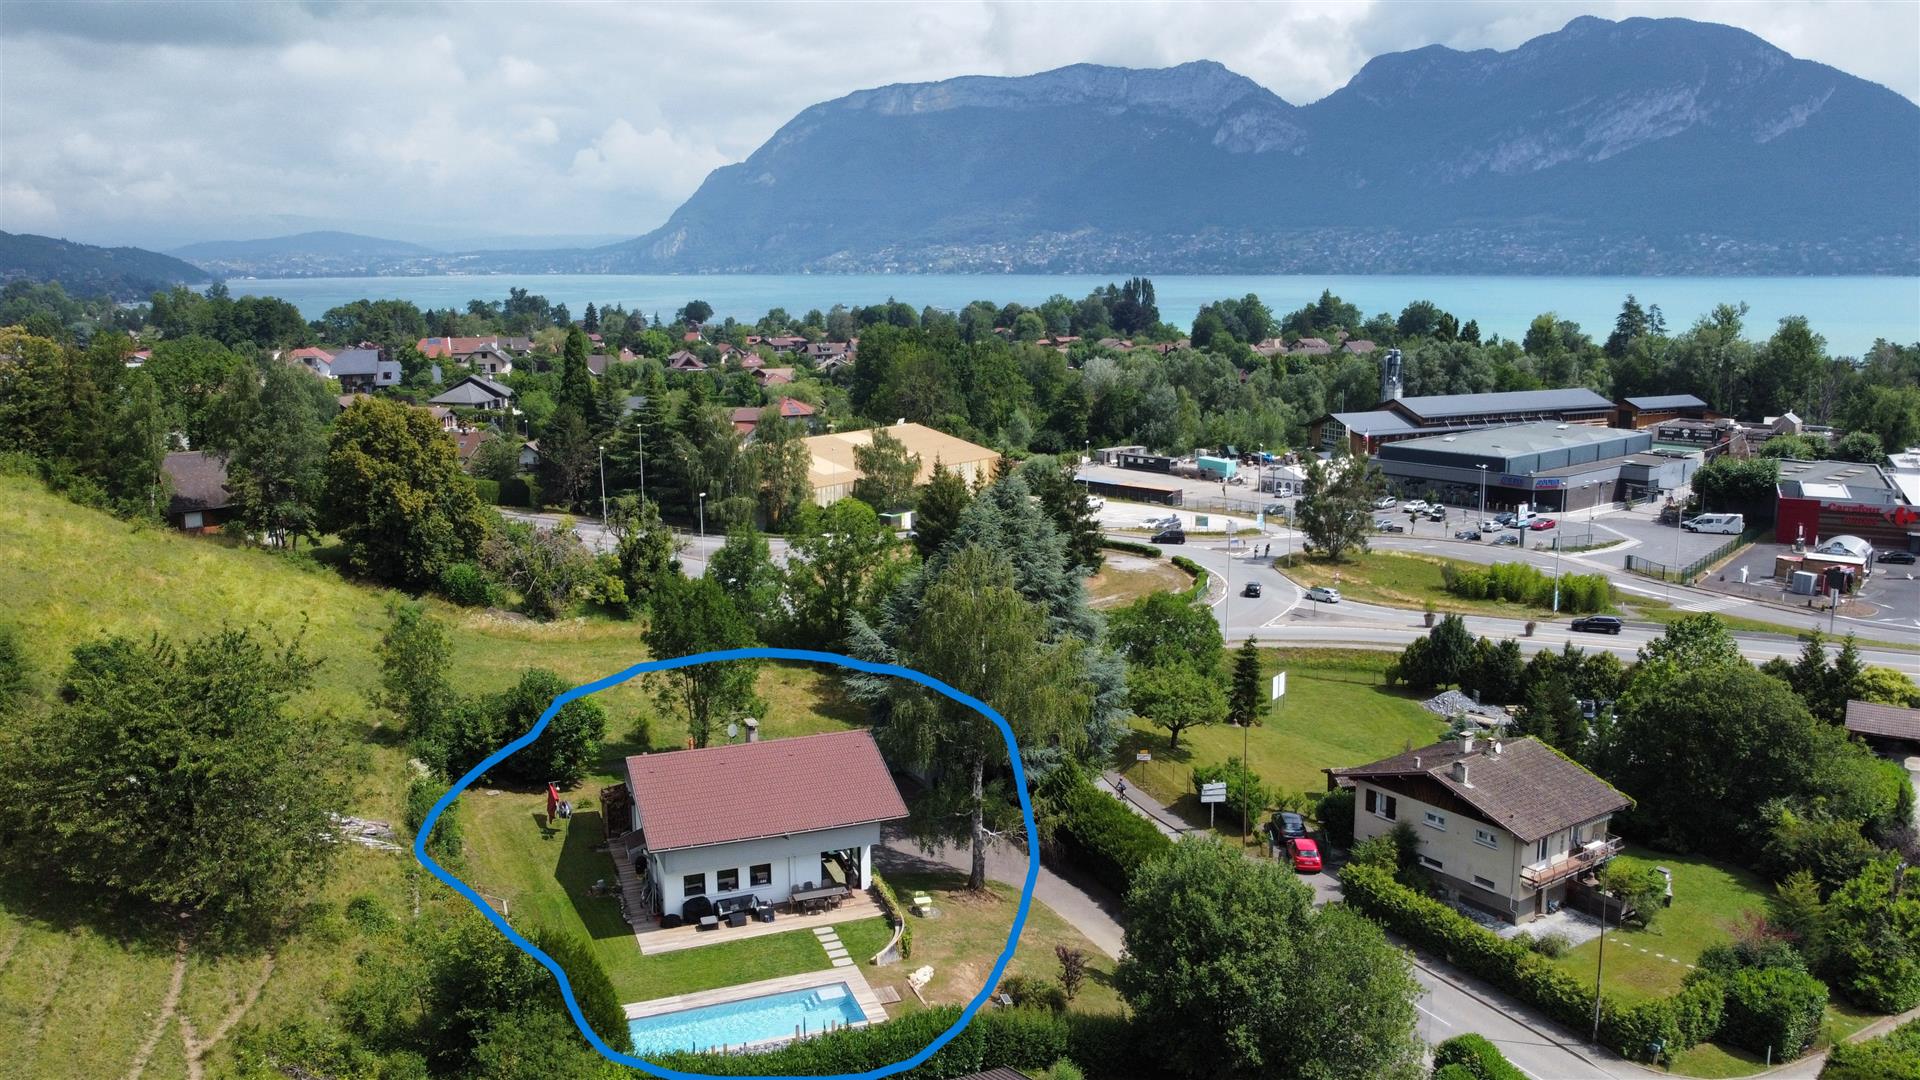 Suvremena kuća s bazenom 500 metara od jezera Annecy